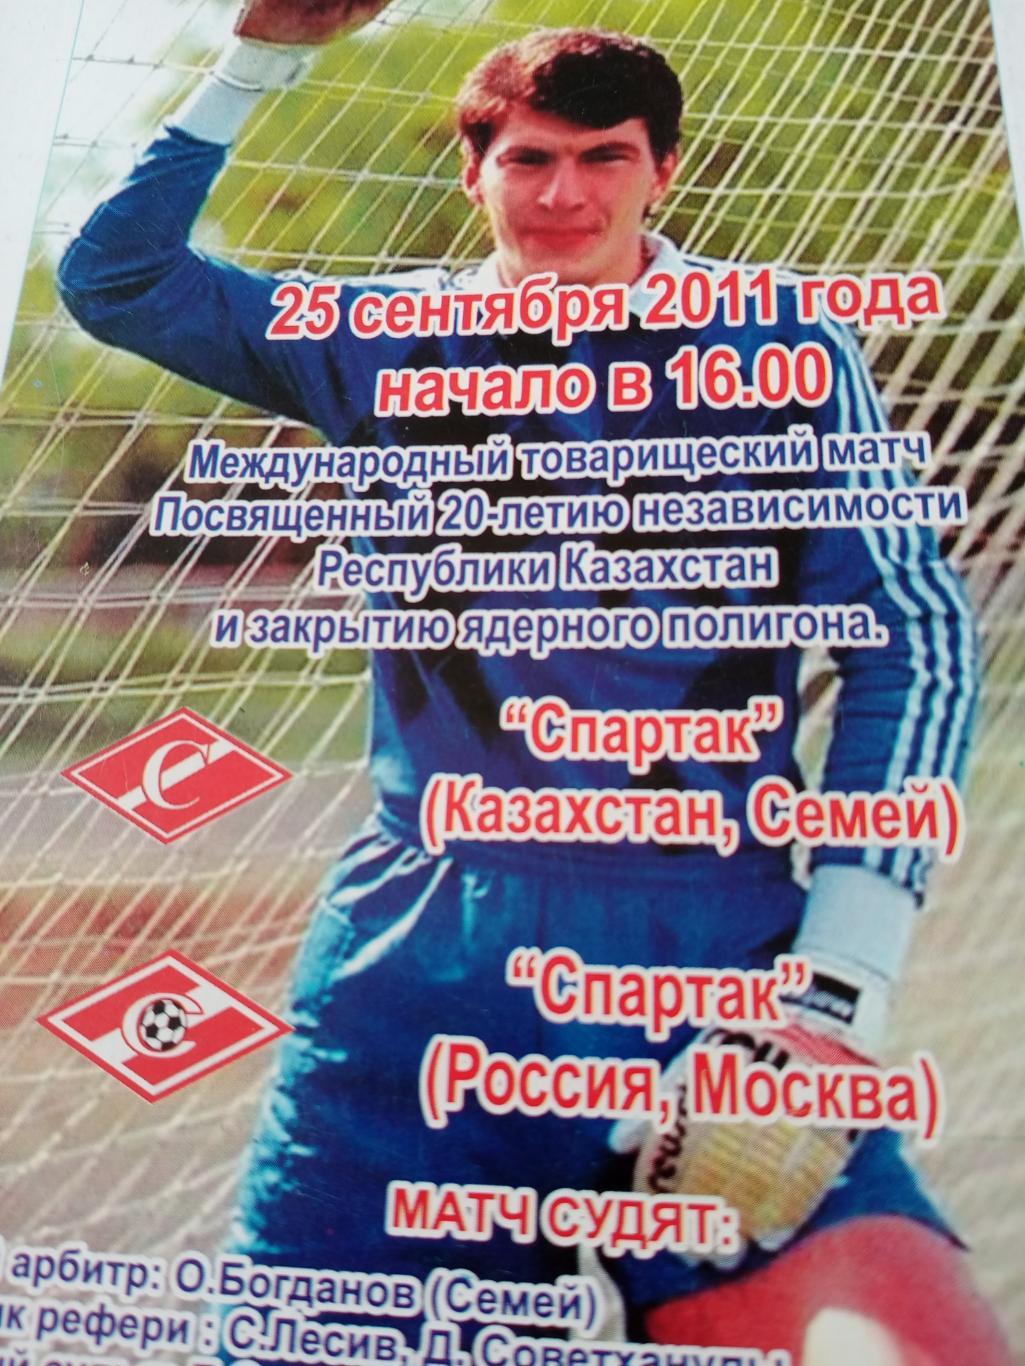 Спартак Казахстан, Семей - Спартак Москва. 25.09.2011 г.см. описание